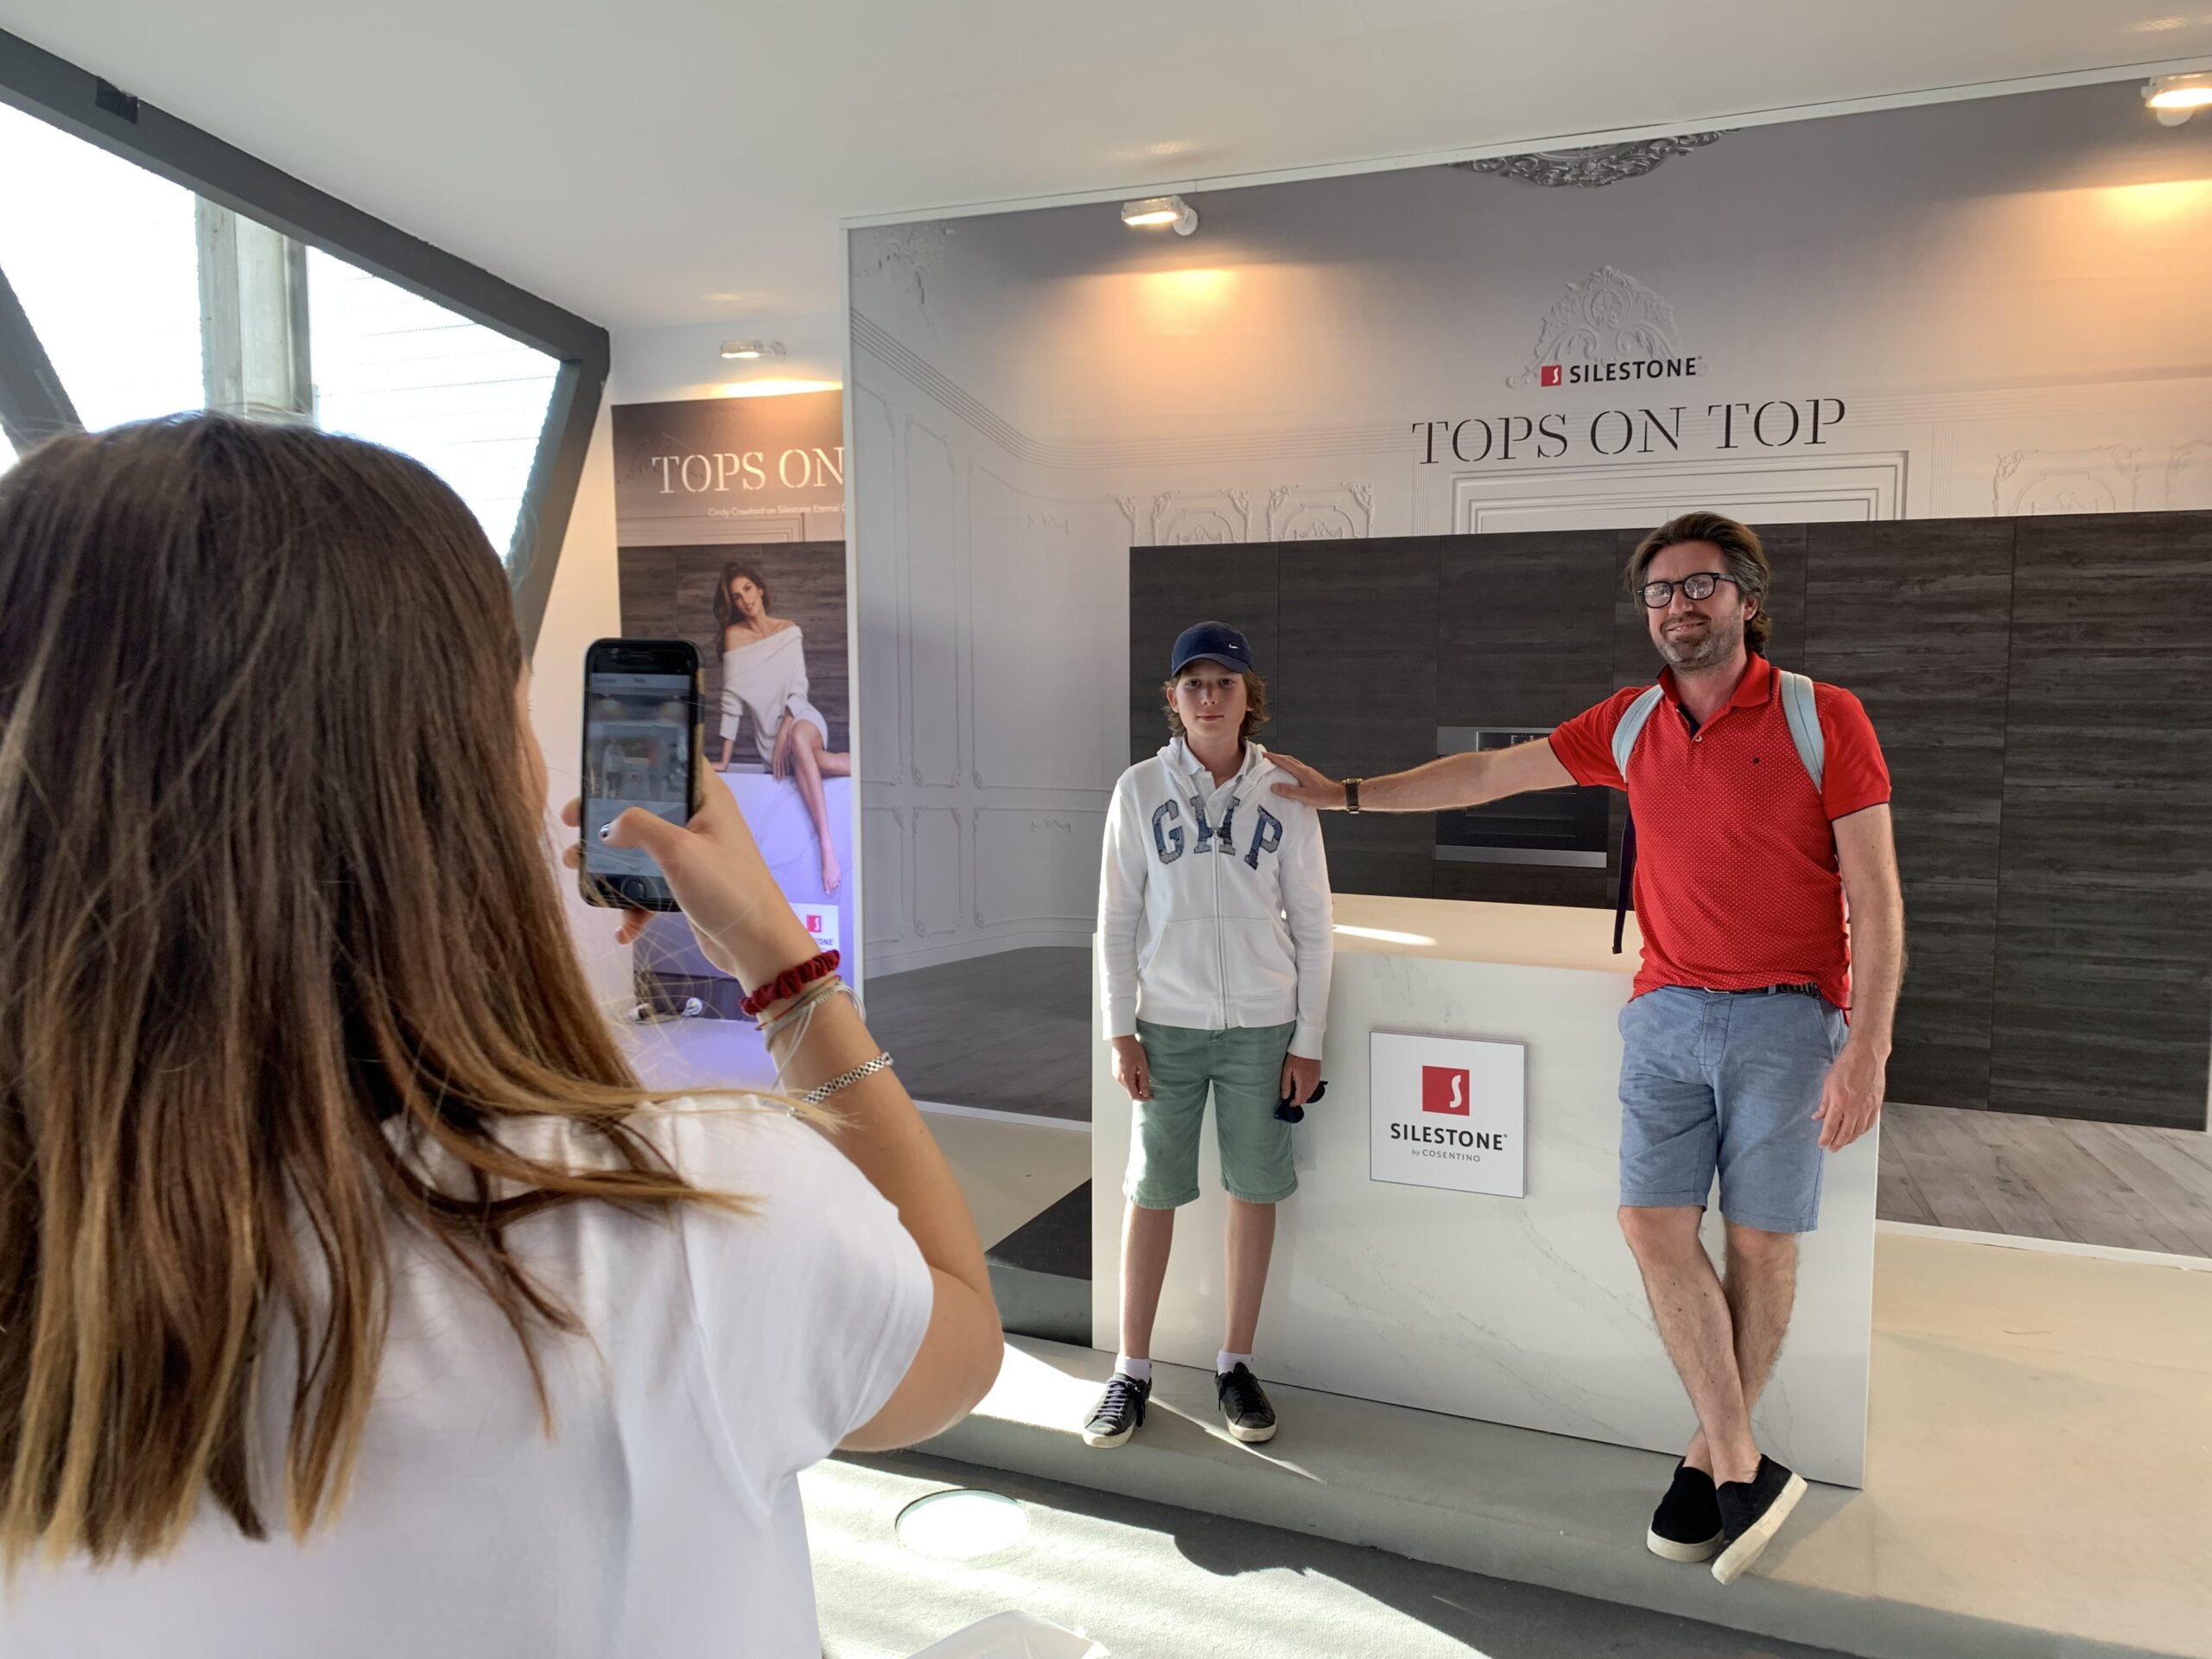 Image 44 of Accion Tops On Top de Silestone en MMO 2019 1 1 scaled in Dekton® stars at the Mutua Madrid Open - Cosentino